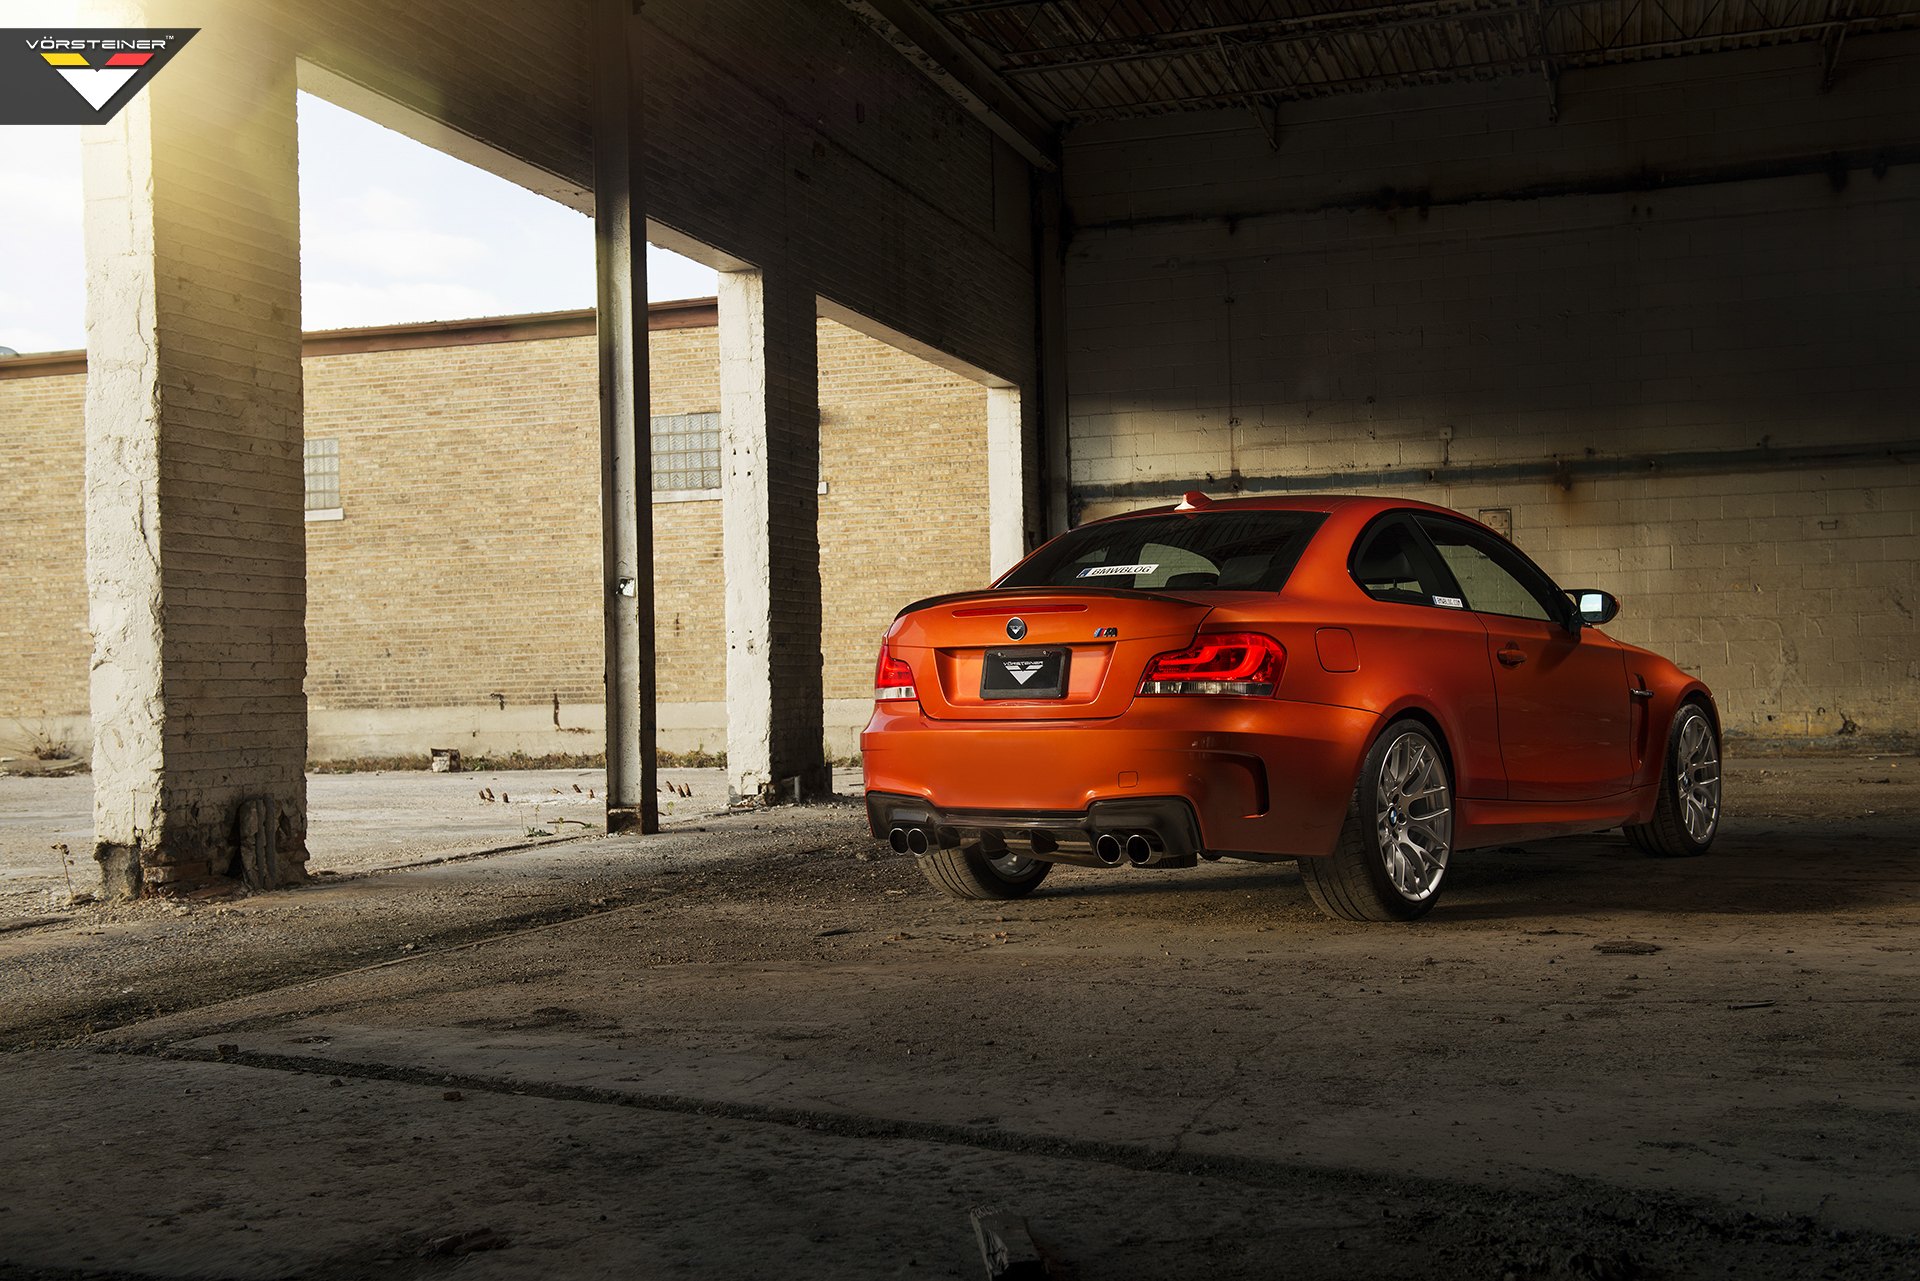 Custom Rear Diffuser on Orange BMW 1-Series - Photo by Vorstiner